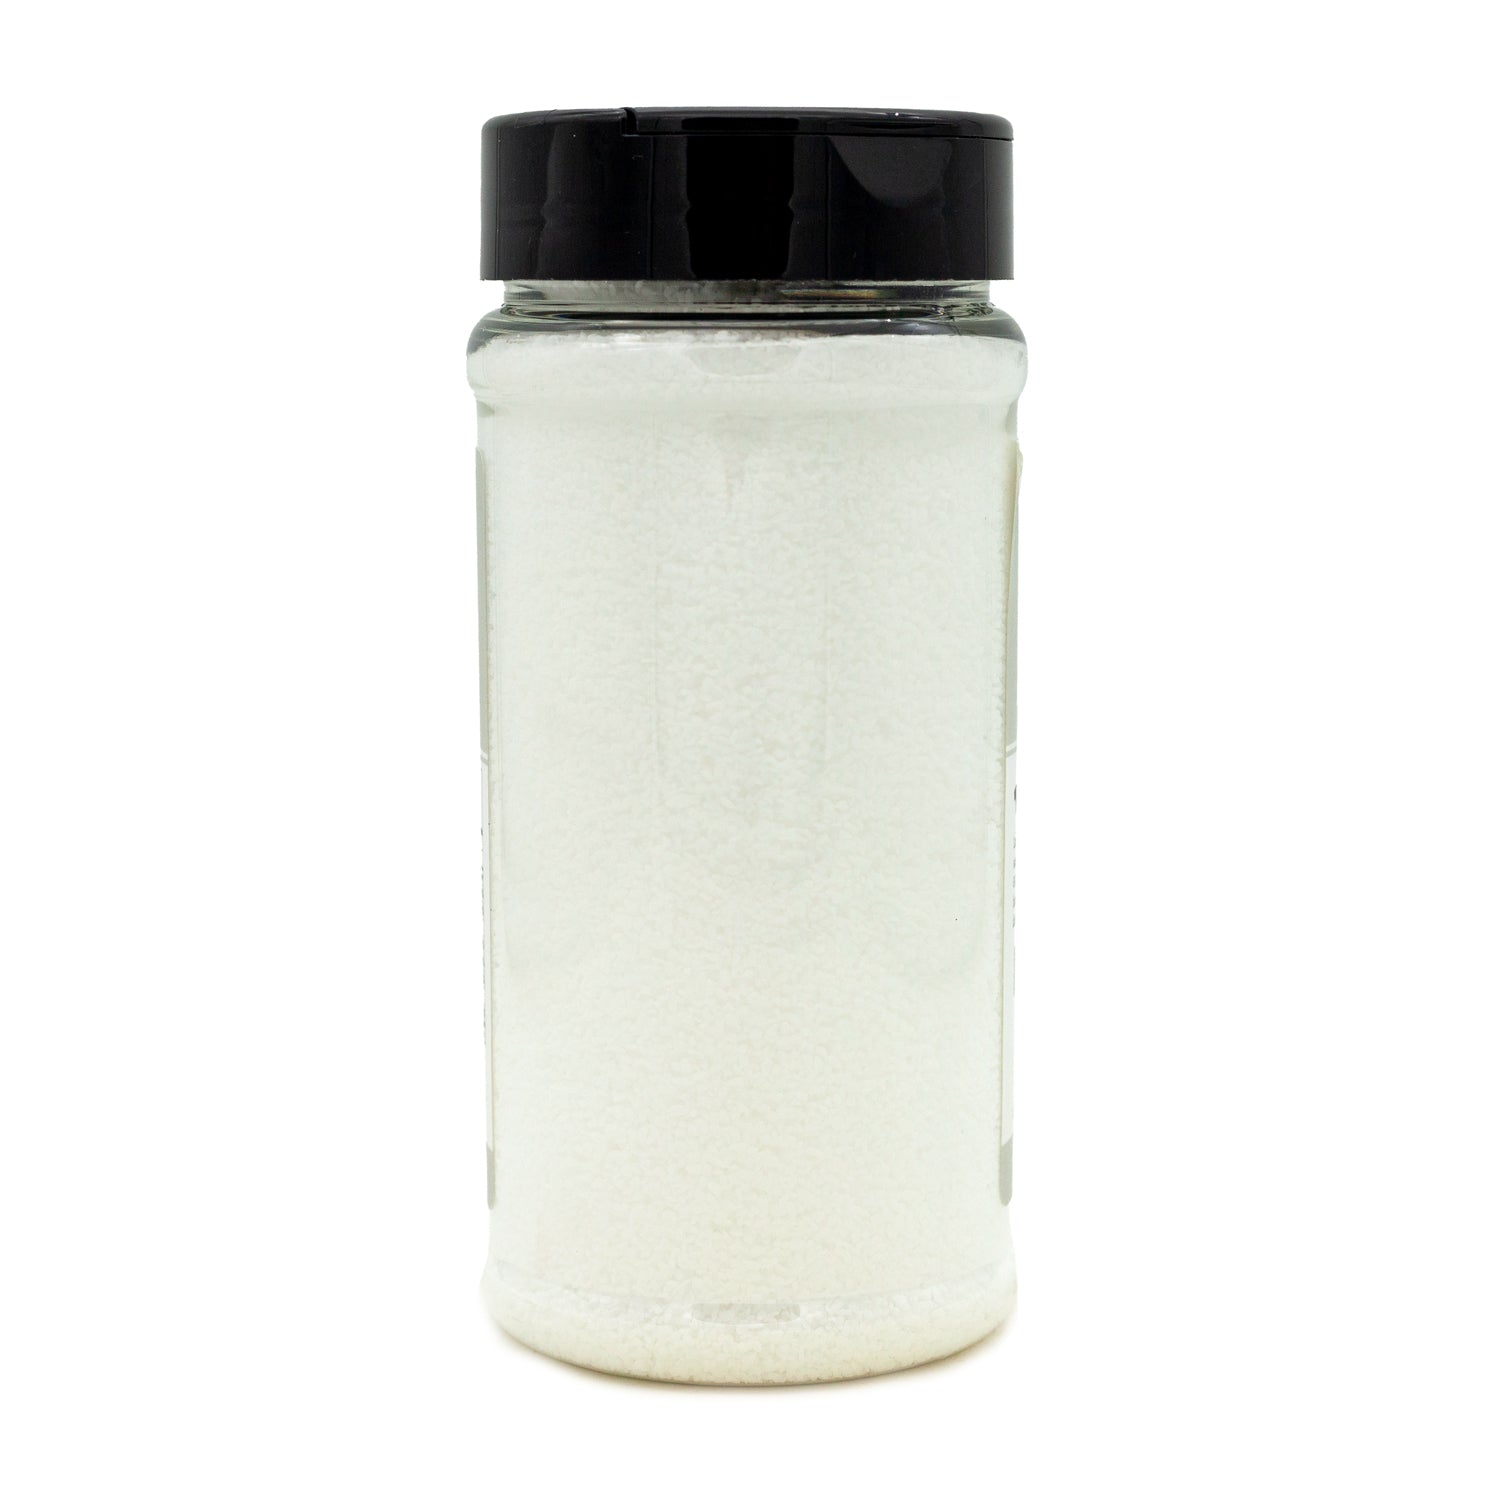 Coarse Kosher Salt